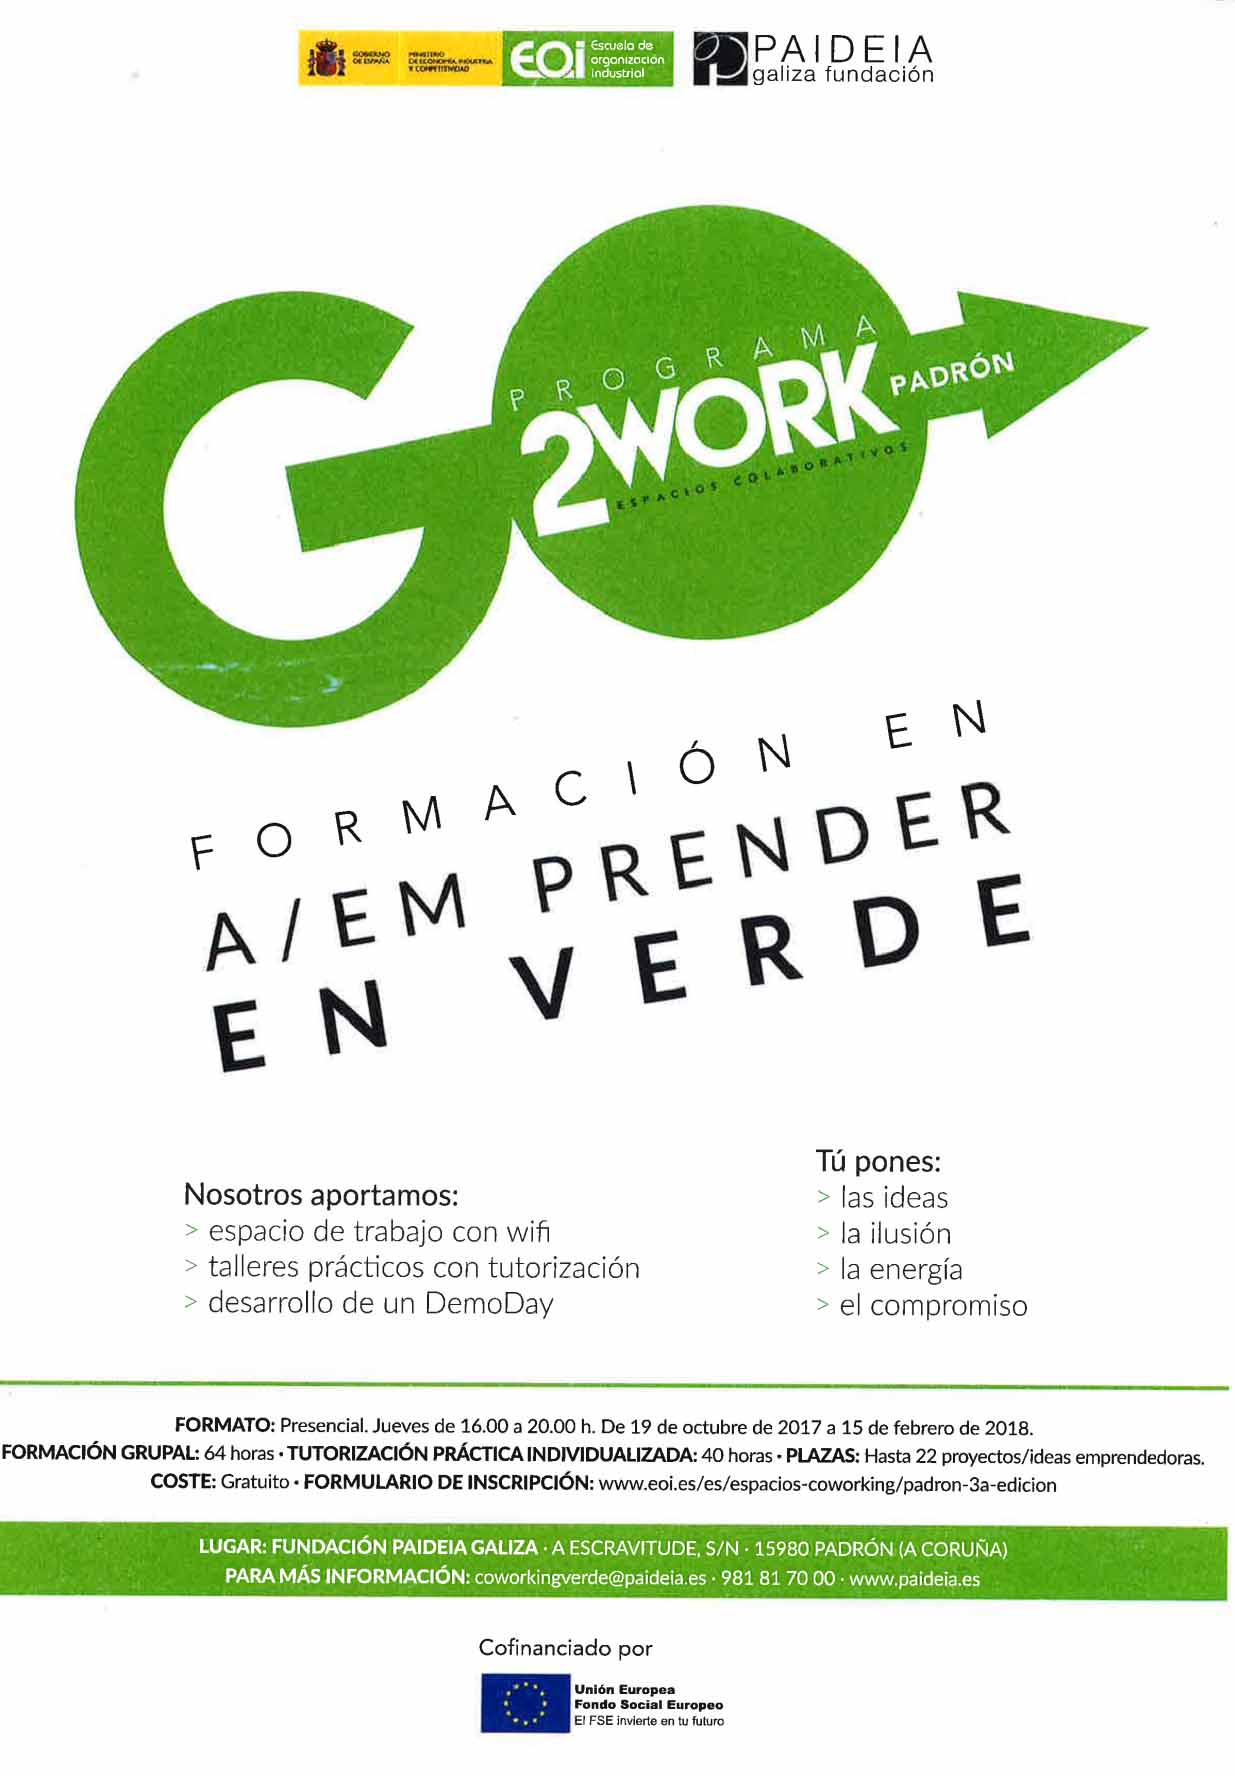 Aberto o prazo de inscrición no programa “Go 2 Work Emprender en verde”